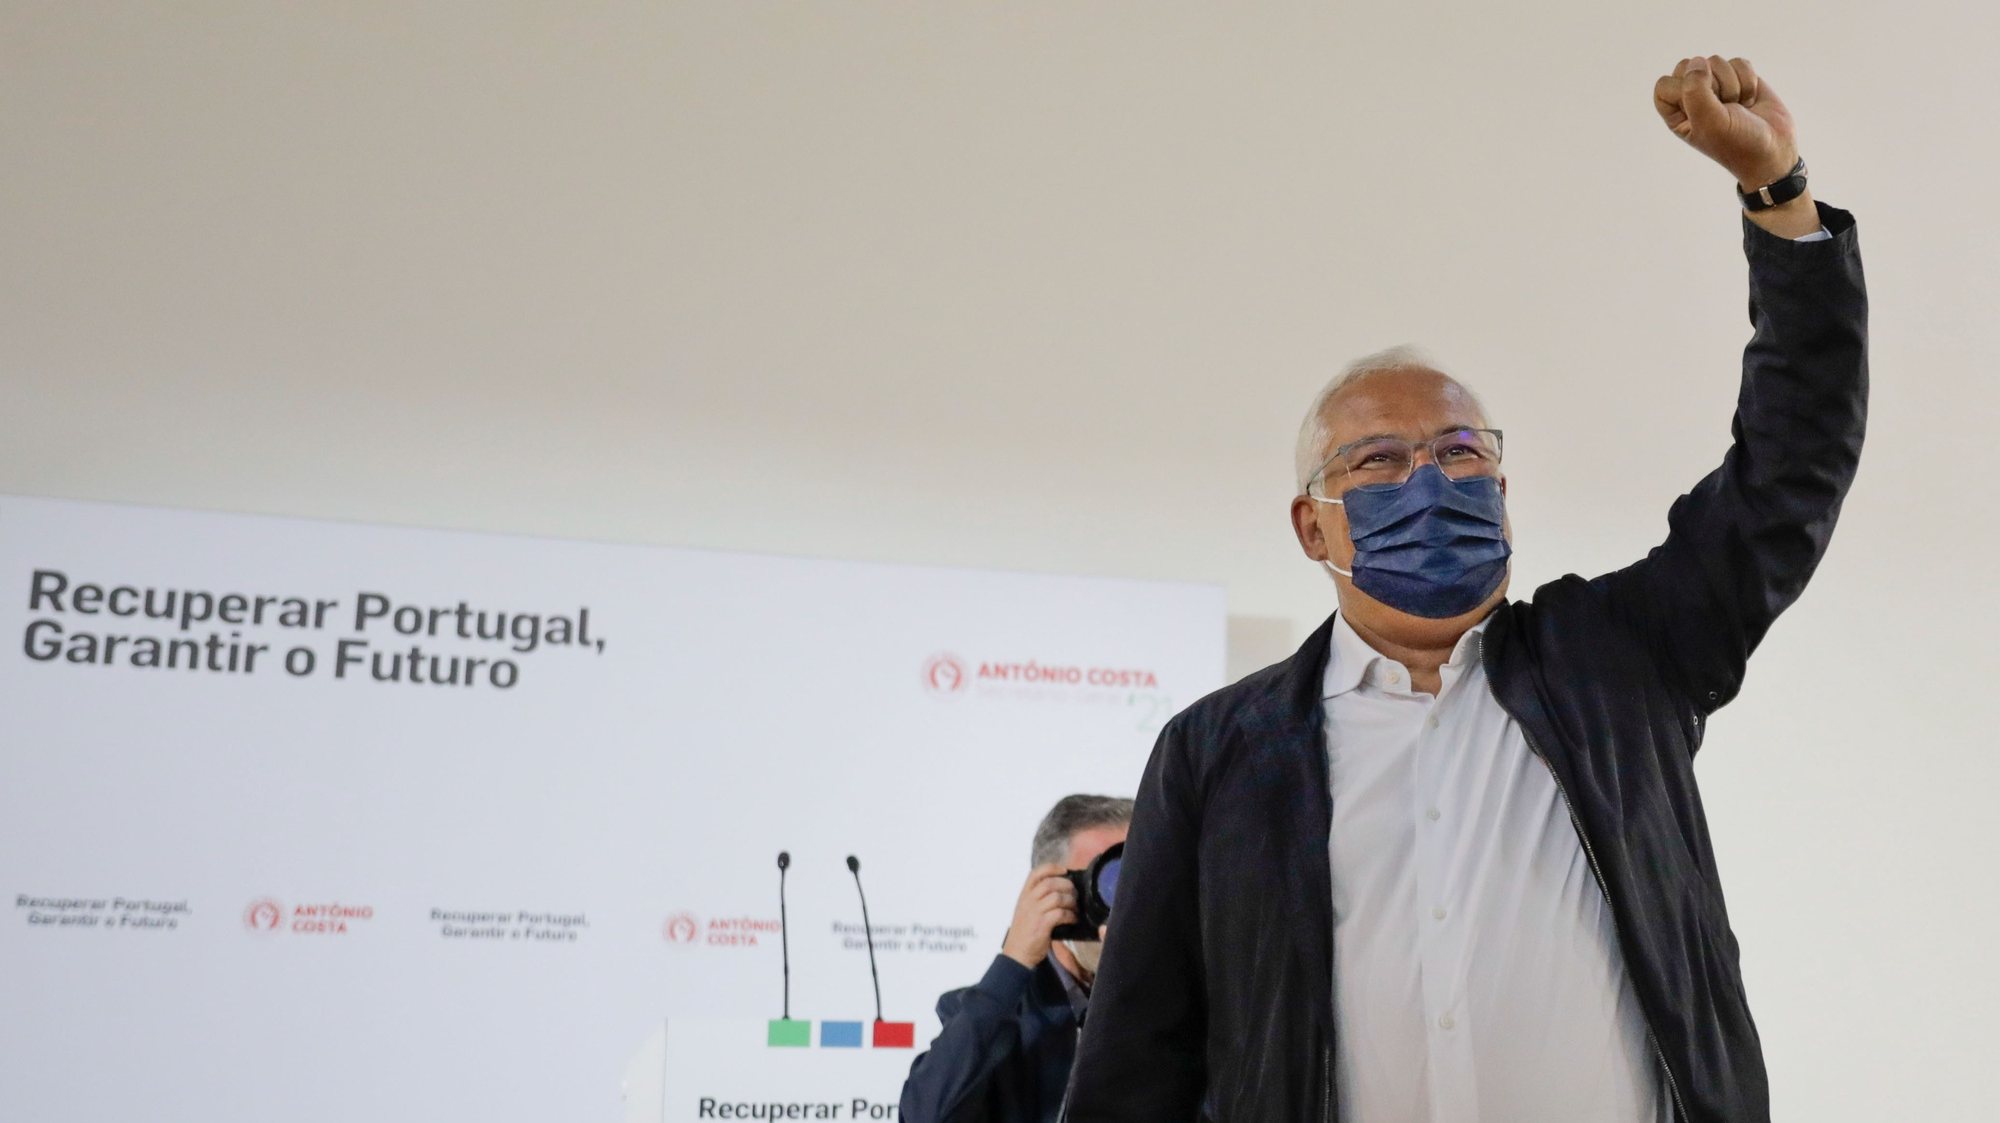 António Costa na apresentação da moção da candidatura a secretário-geral do Partido Socialista (PS) “Recuperar Portugal - Garantir o Futuro” na Figueira da Foz, 29 de maio de 2021. PAULO CUNHA /LUSA